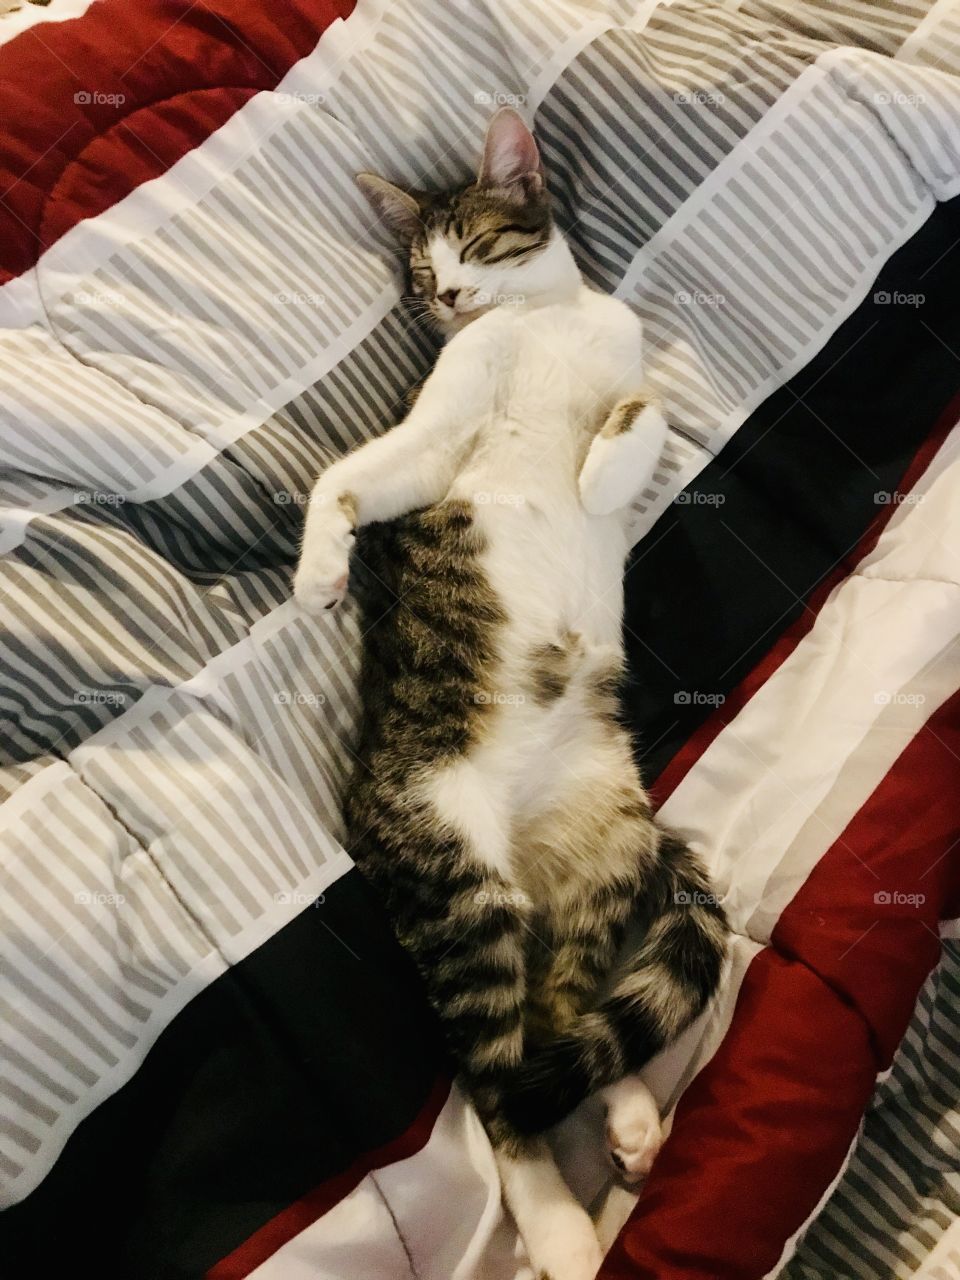 Cat sleep’s like a human